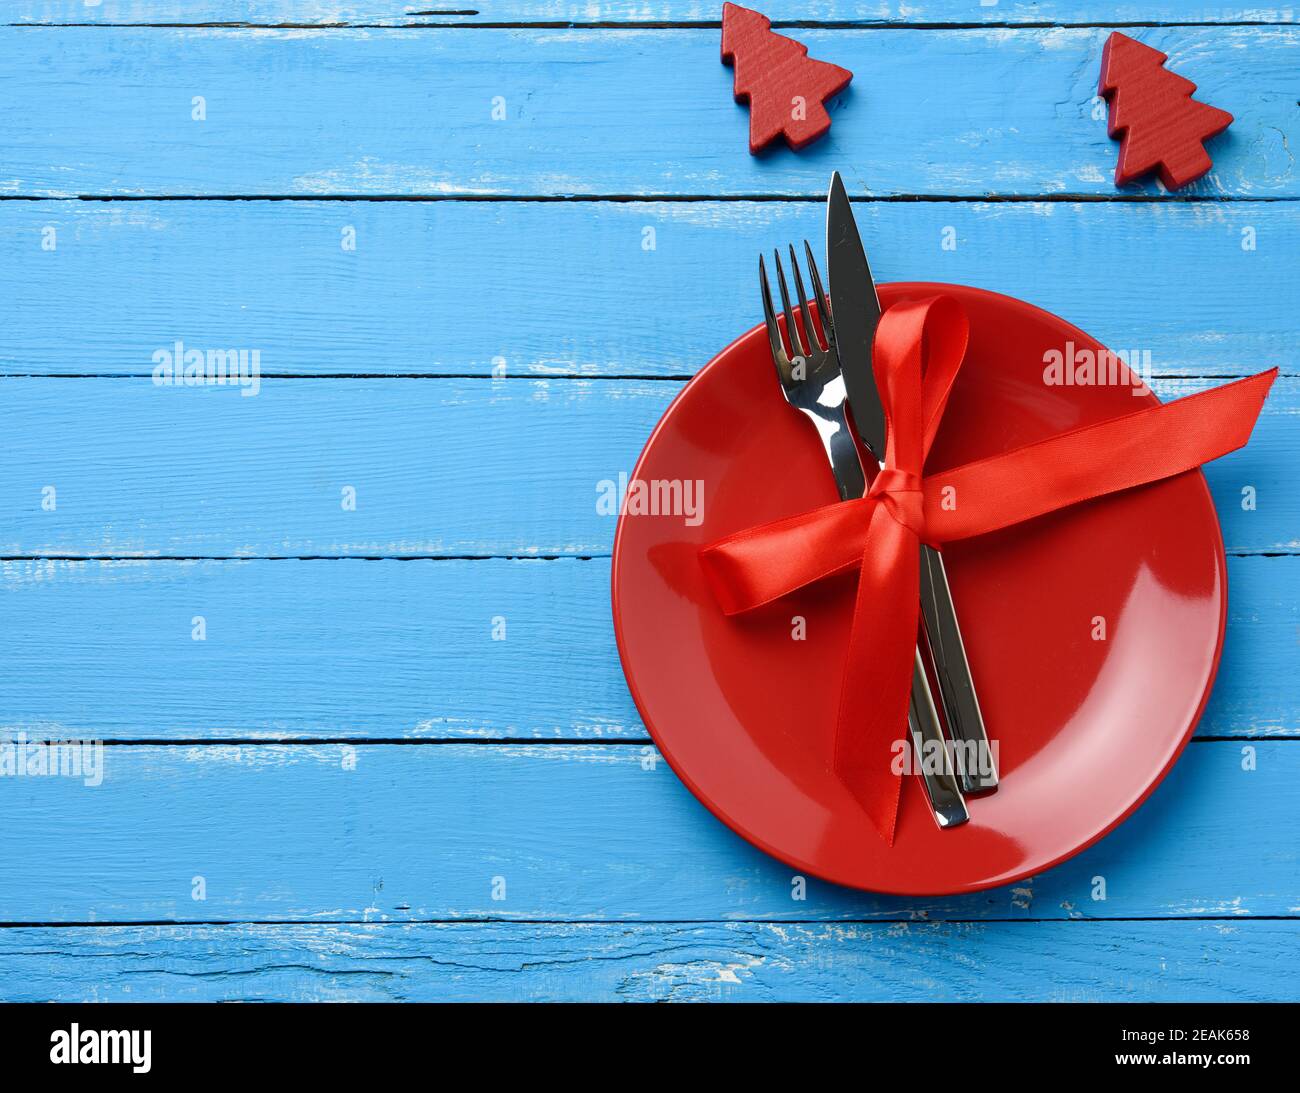 Runde Platte und Metall Gabel und Messer mit einem roten Seidenband gebunden, blauer Holzhintergrund Stockfoto